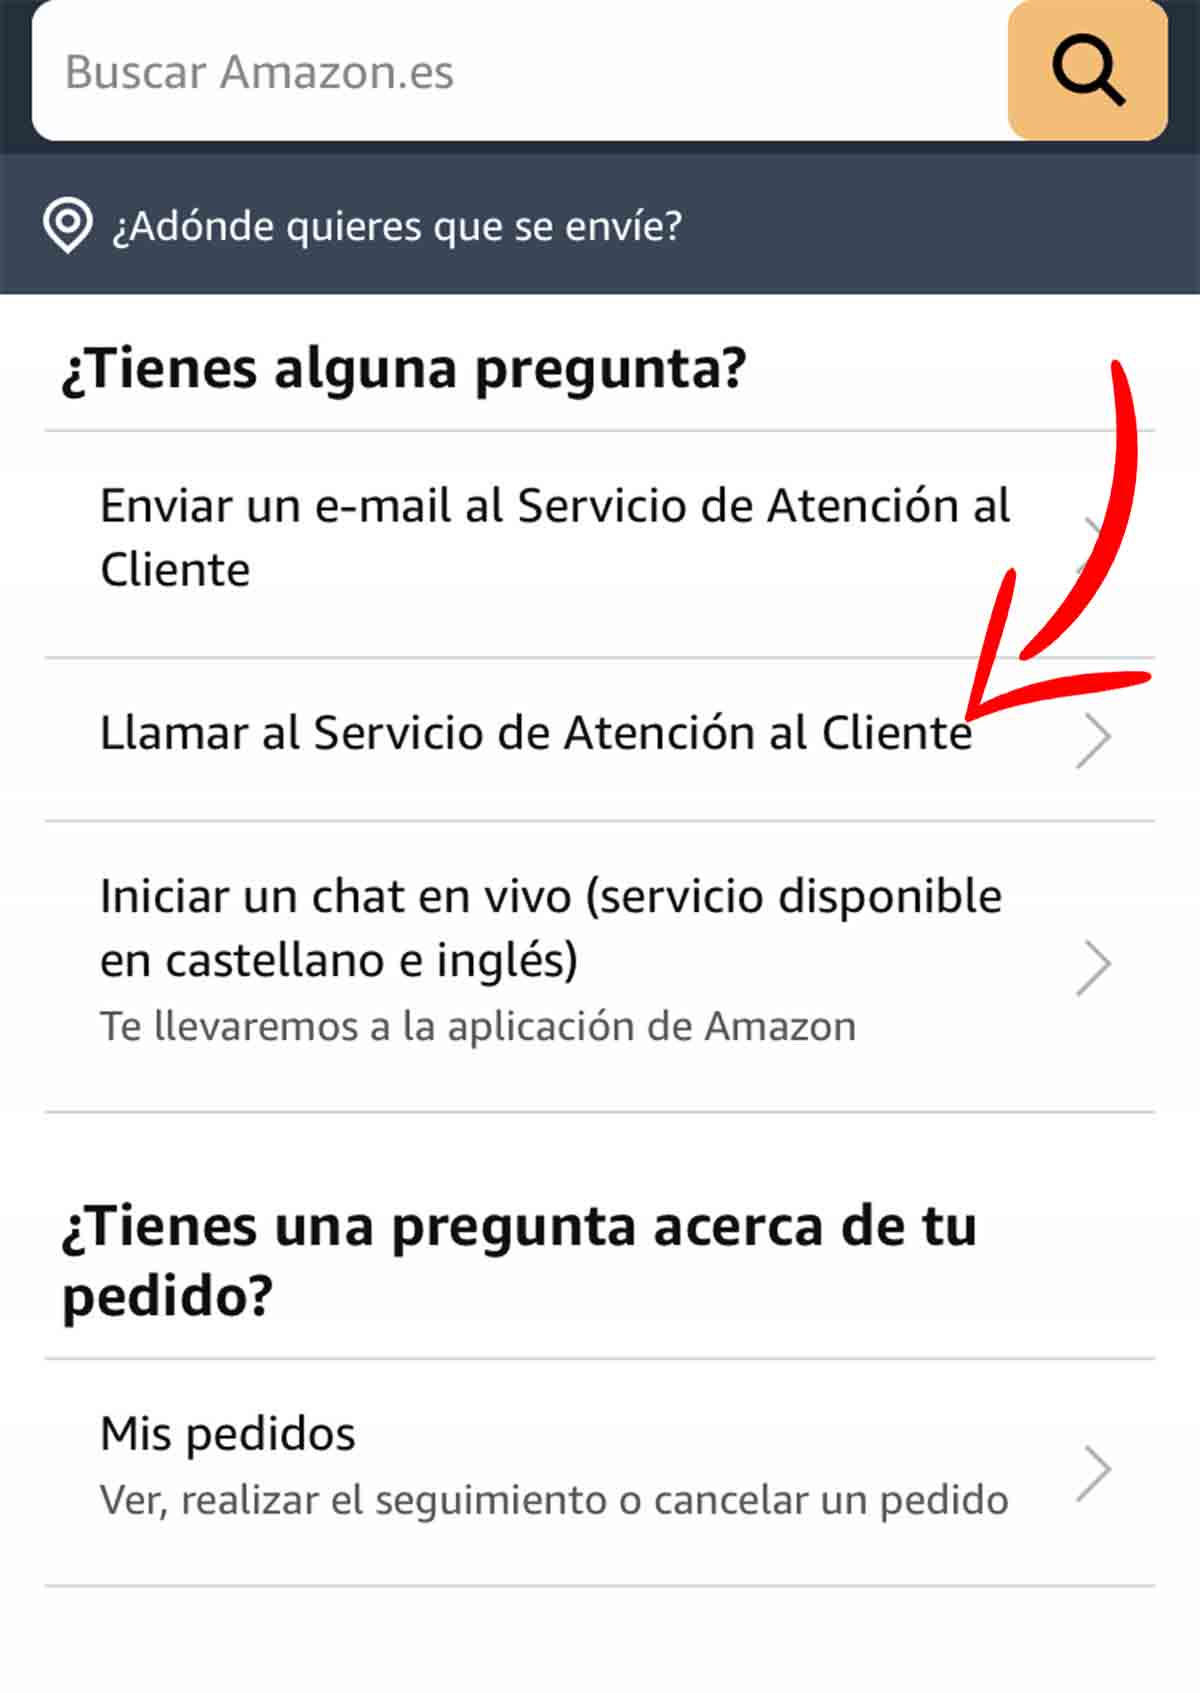 Vías para contactar en Amazon